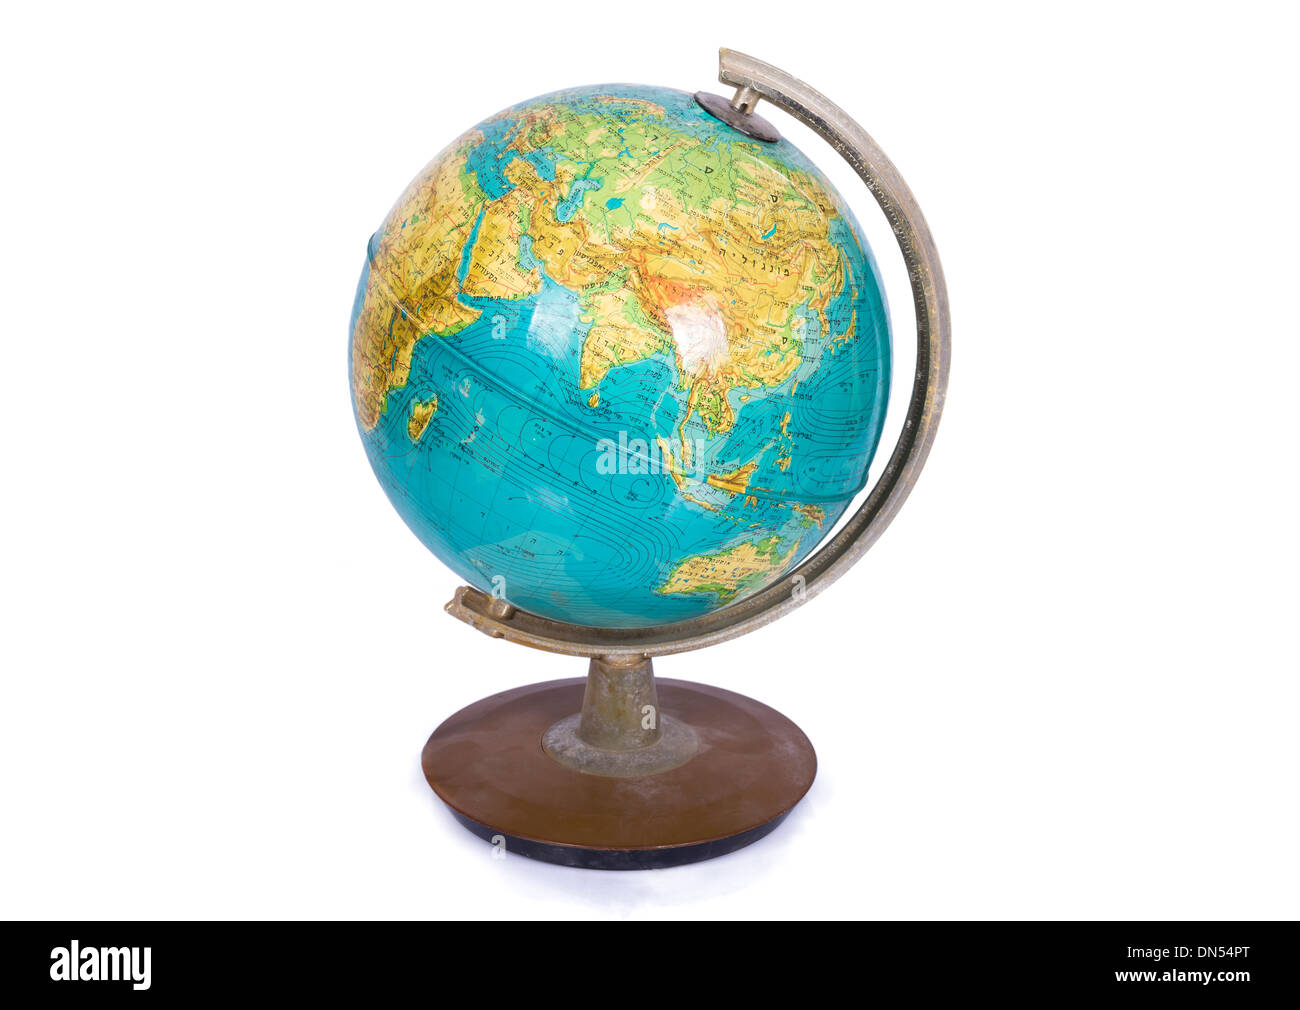 äquator auf globus Ausgeschnittene Stockfotos und -bilder - Alamy